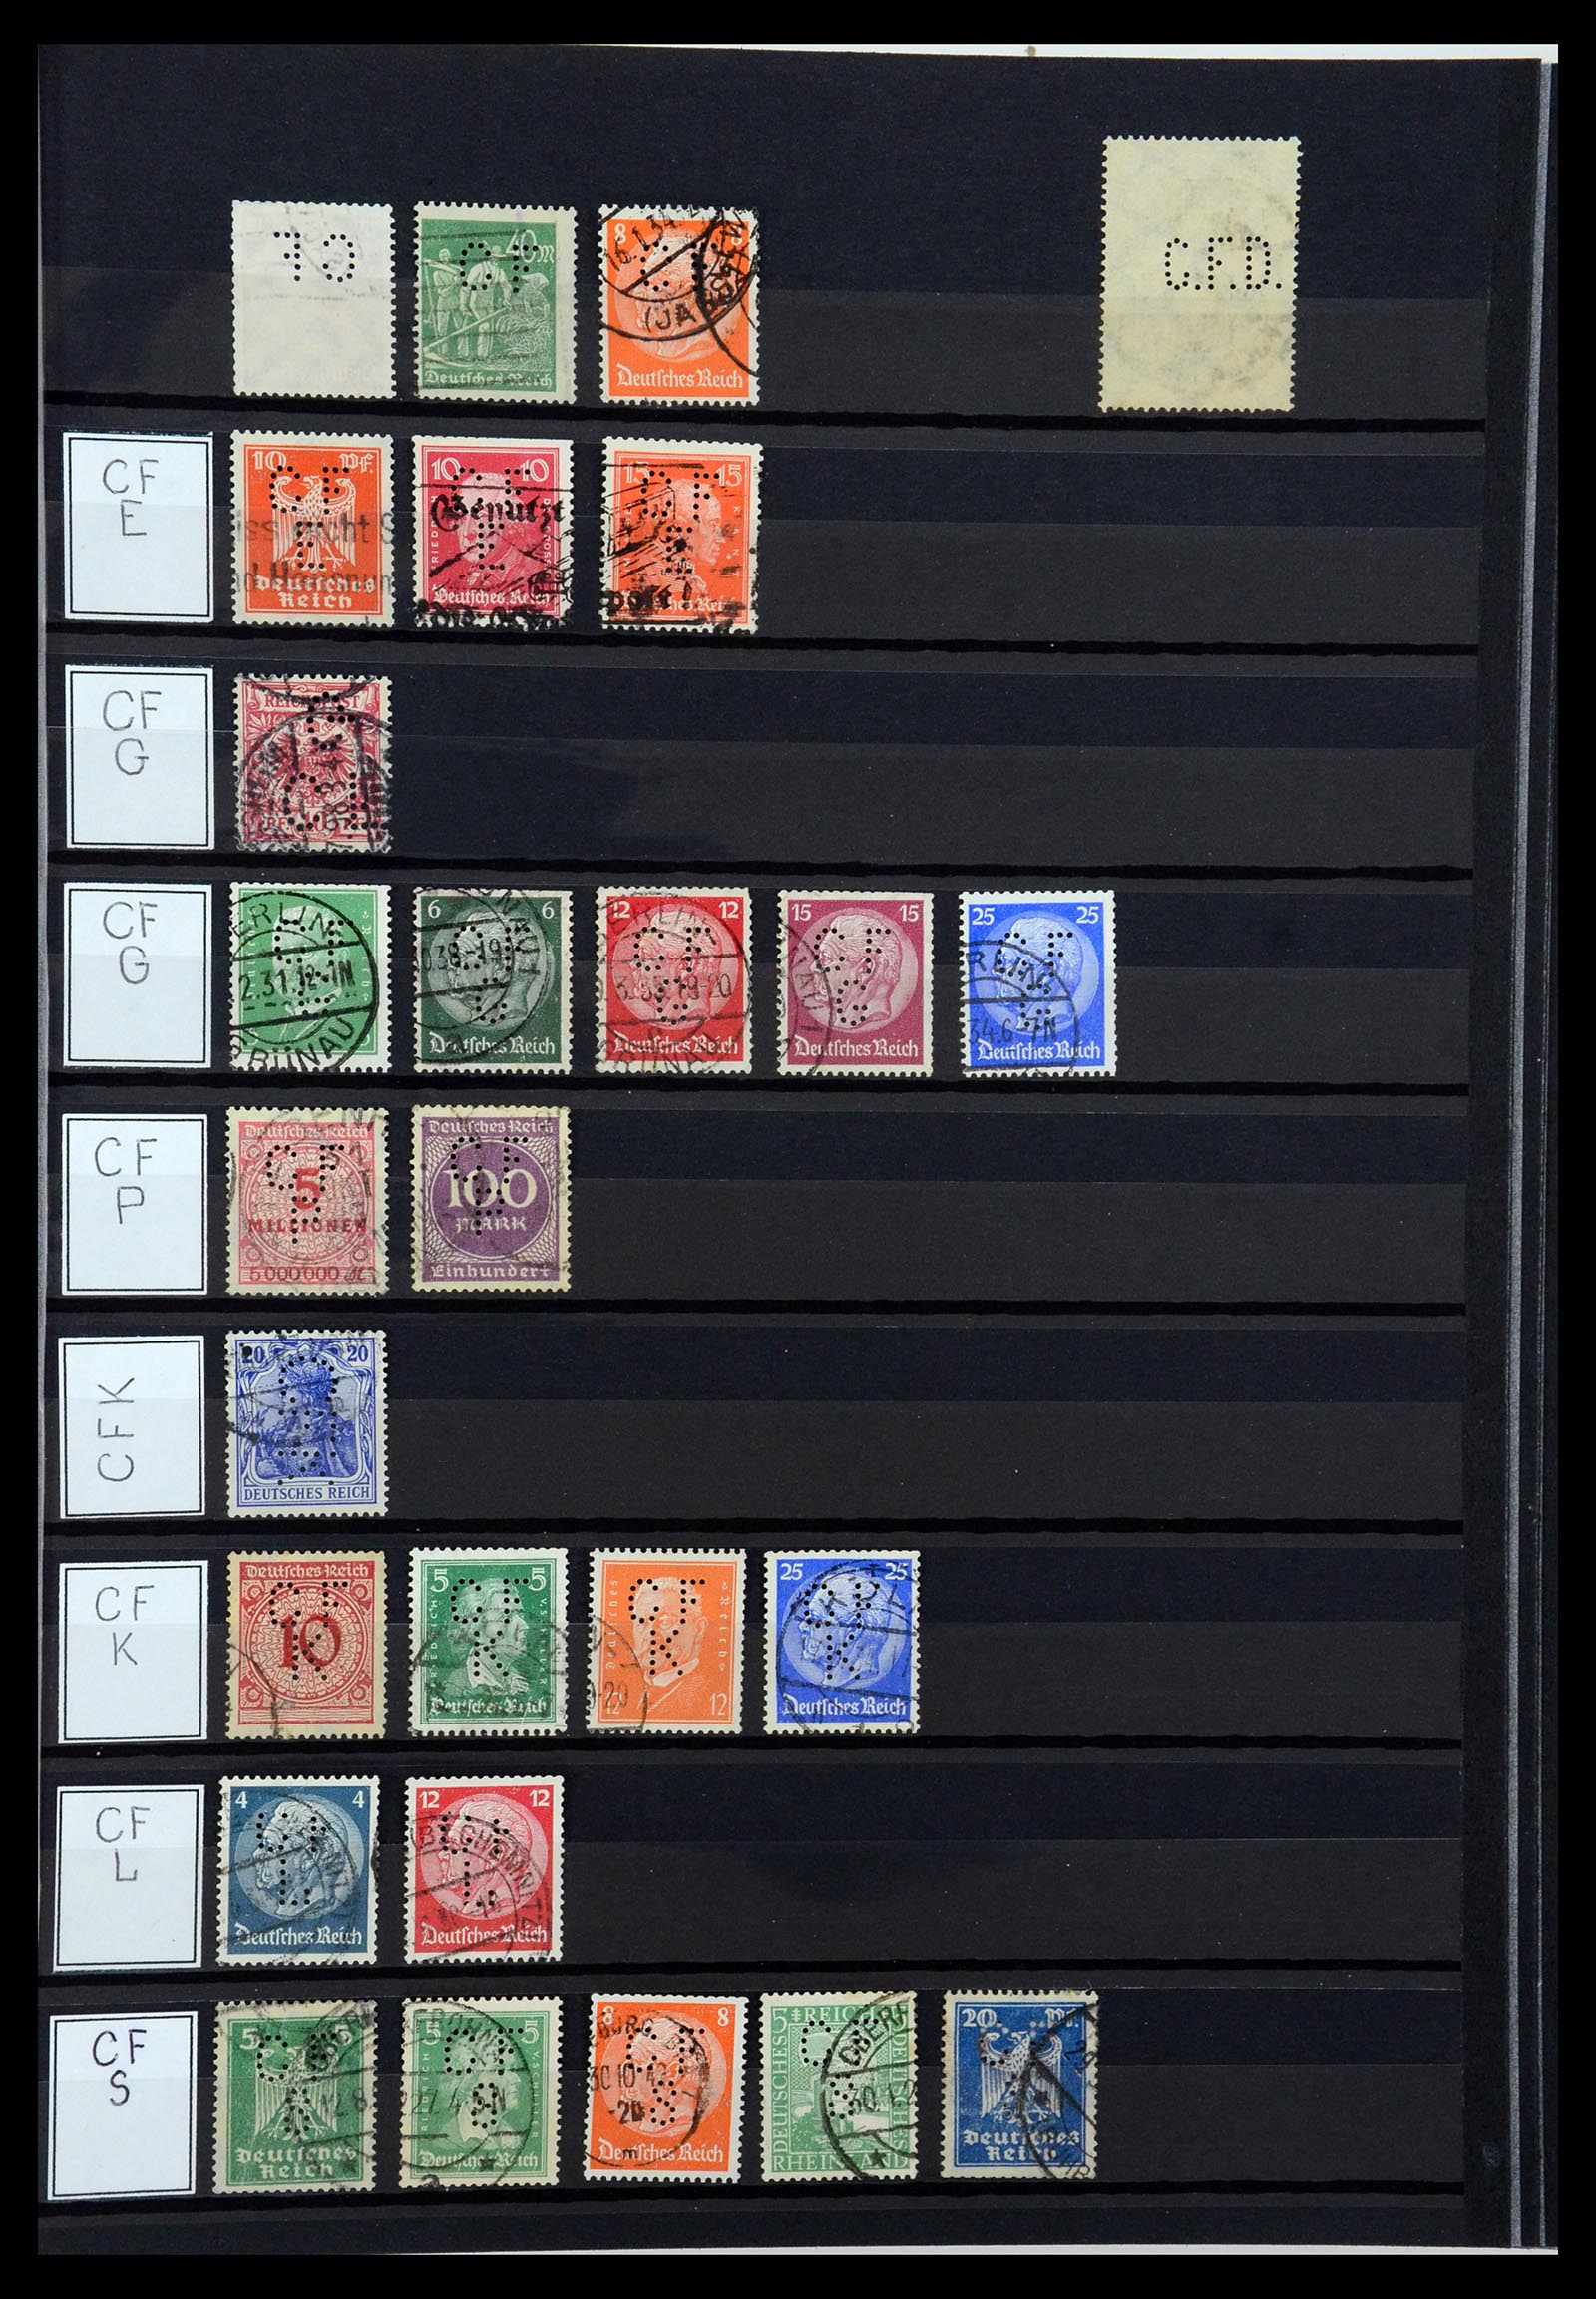 36405 067 - Stamp collection 36405 German Reich perfins 1880-1945.